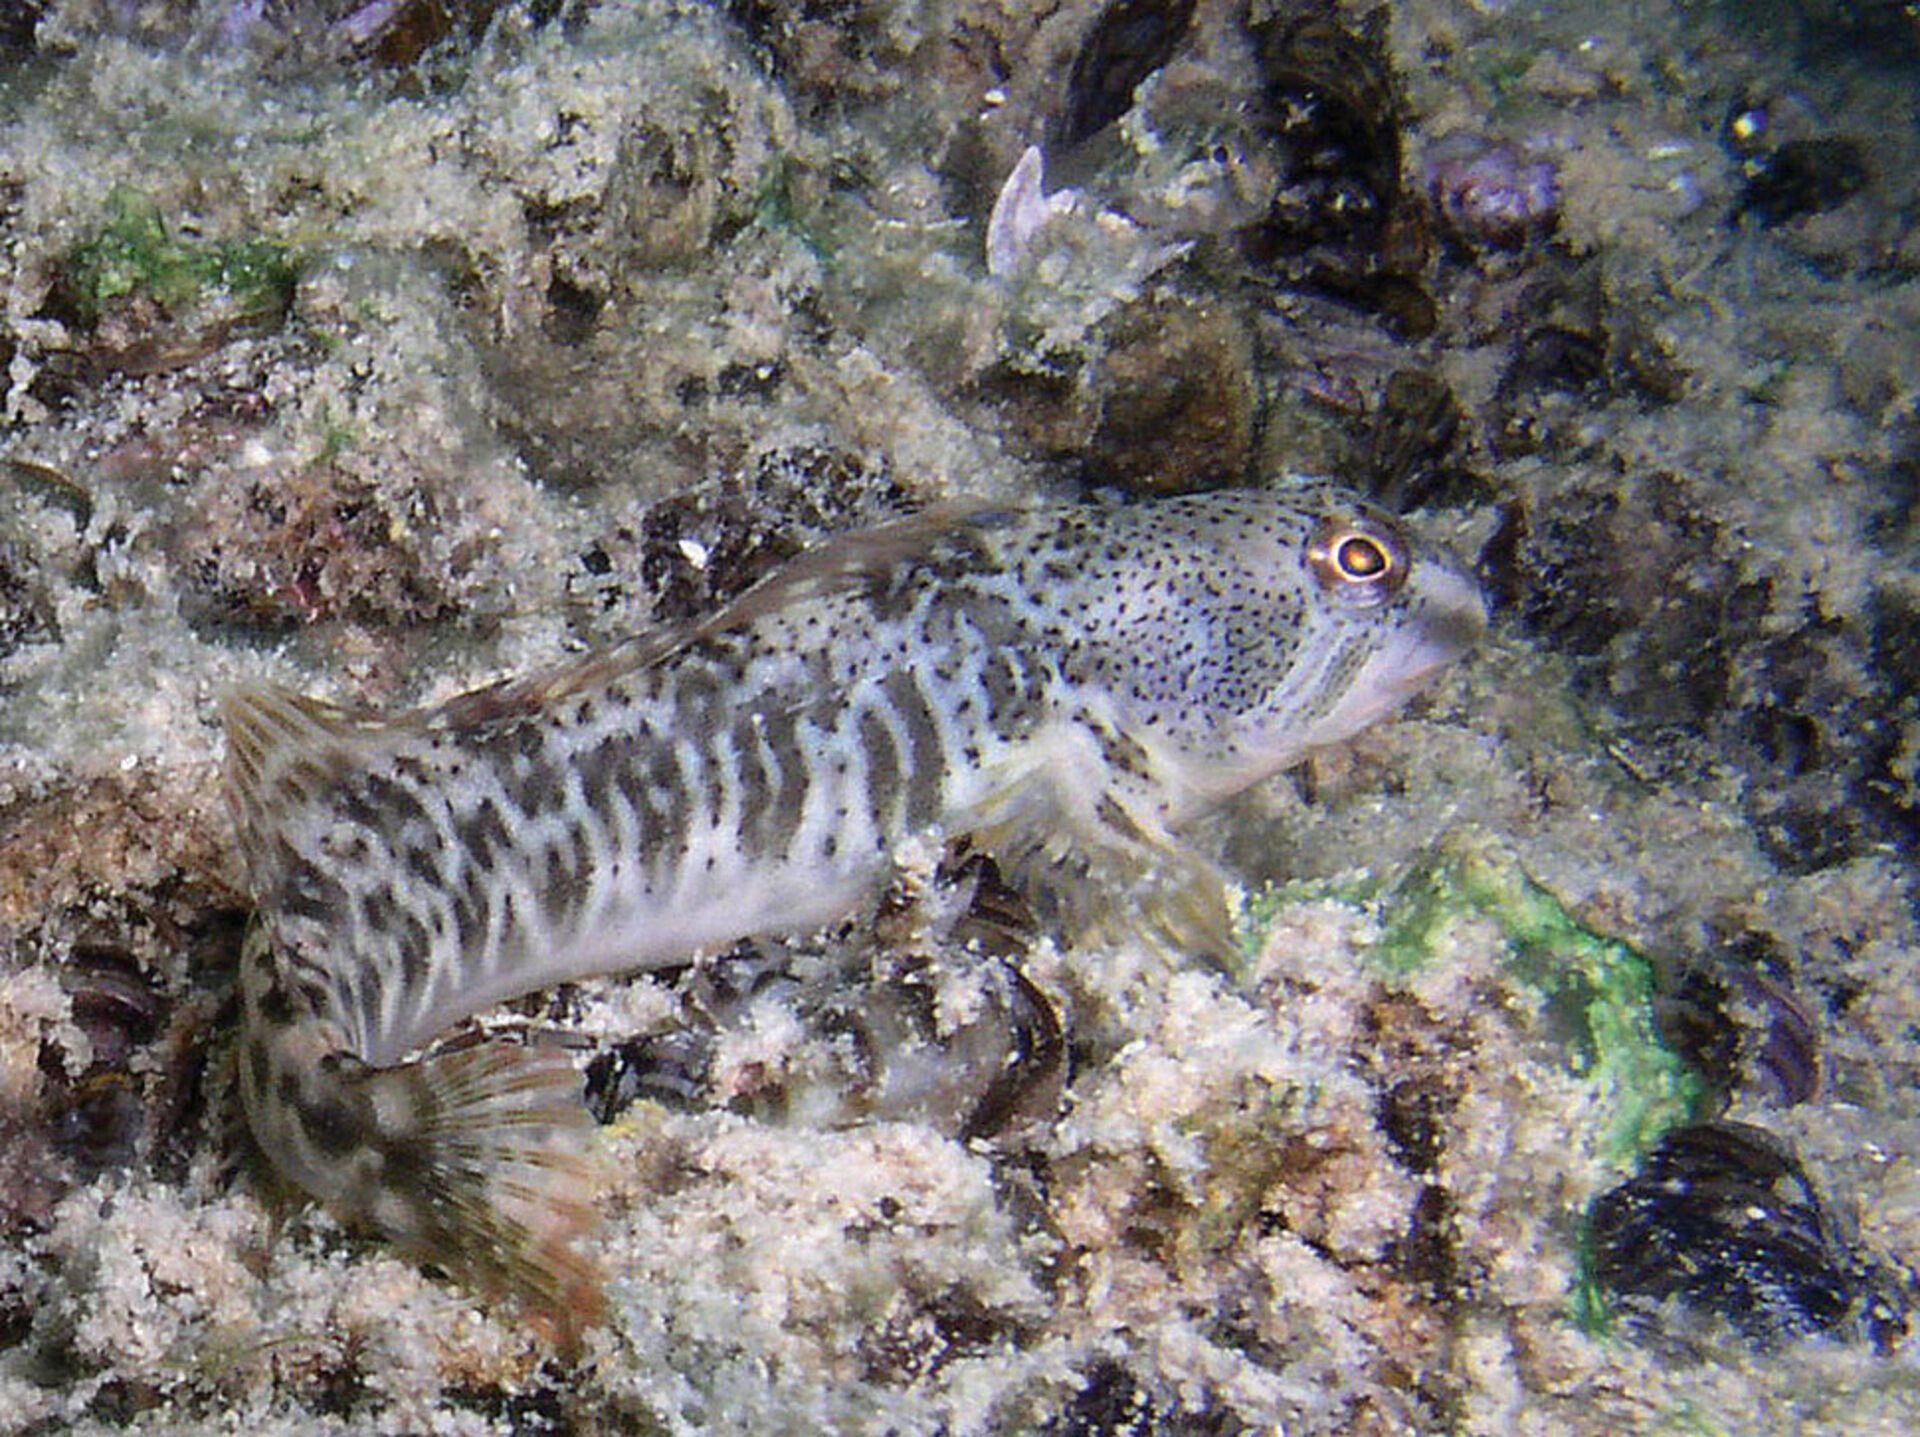  Wer kennt den Süsswasserschleimfisch (Salaria fluviatilis)? Längst nicht alle Fischarten sind allgemein bekannt. Das trifft besonders auf das Tessin zu, wo etliche südliche Arten vorkommen. © wikimedia - Olivier Croissant  